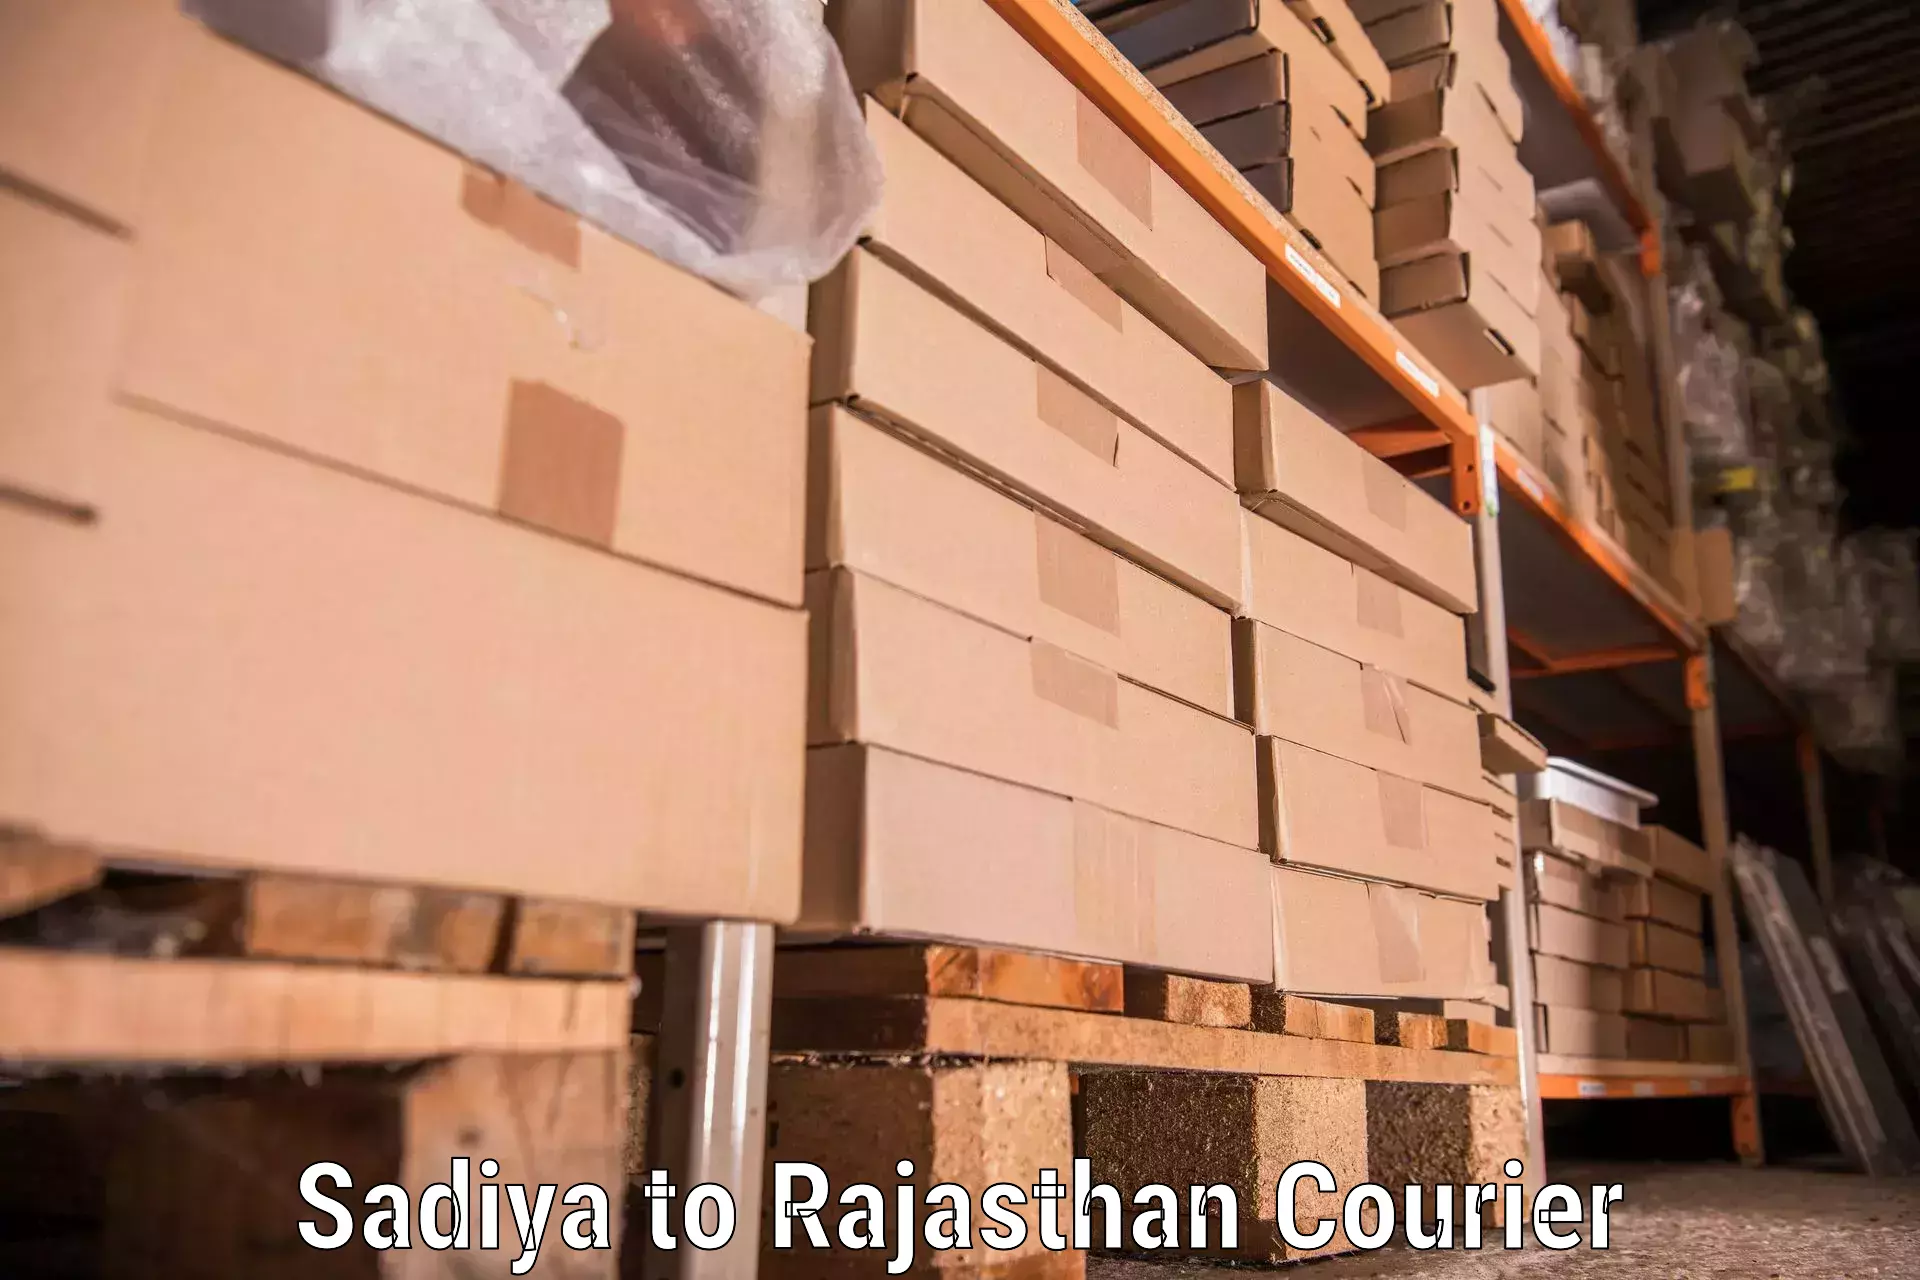 Quality moving company Sadiya to Chittorgarh